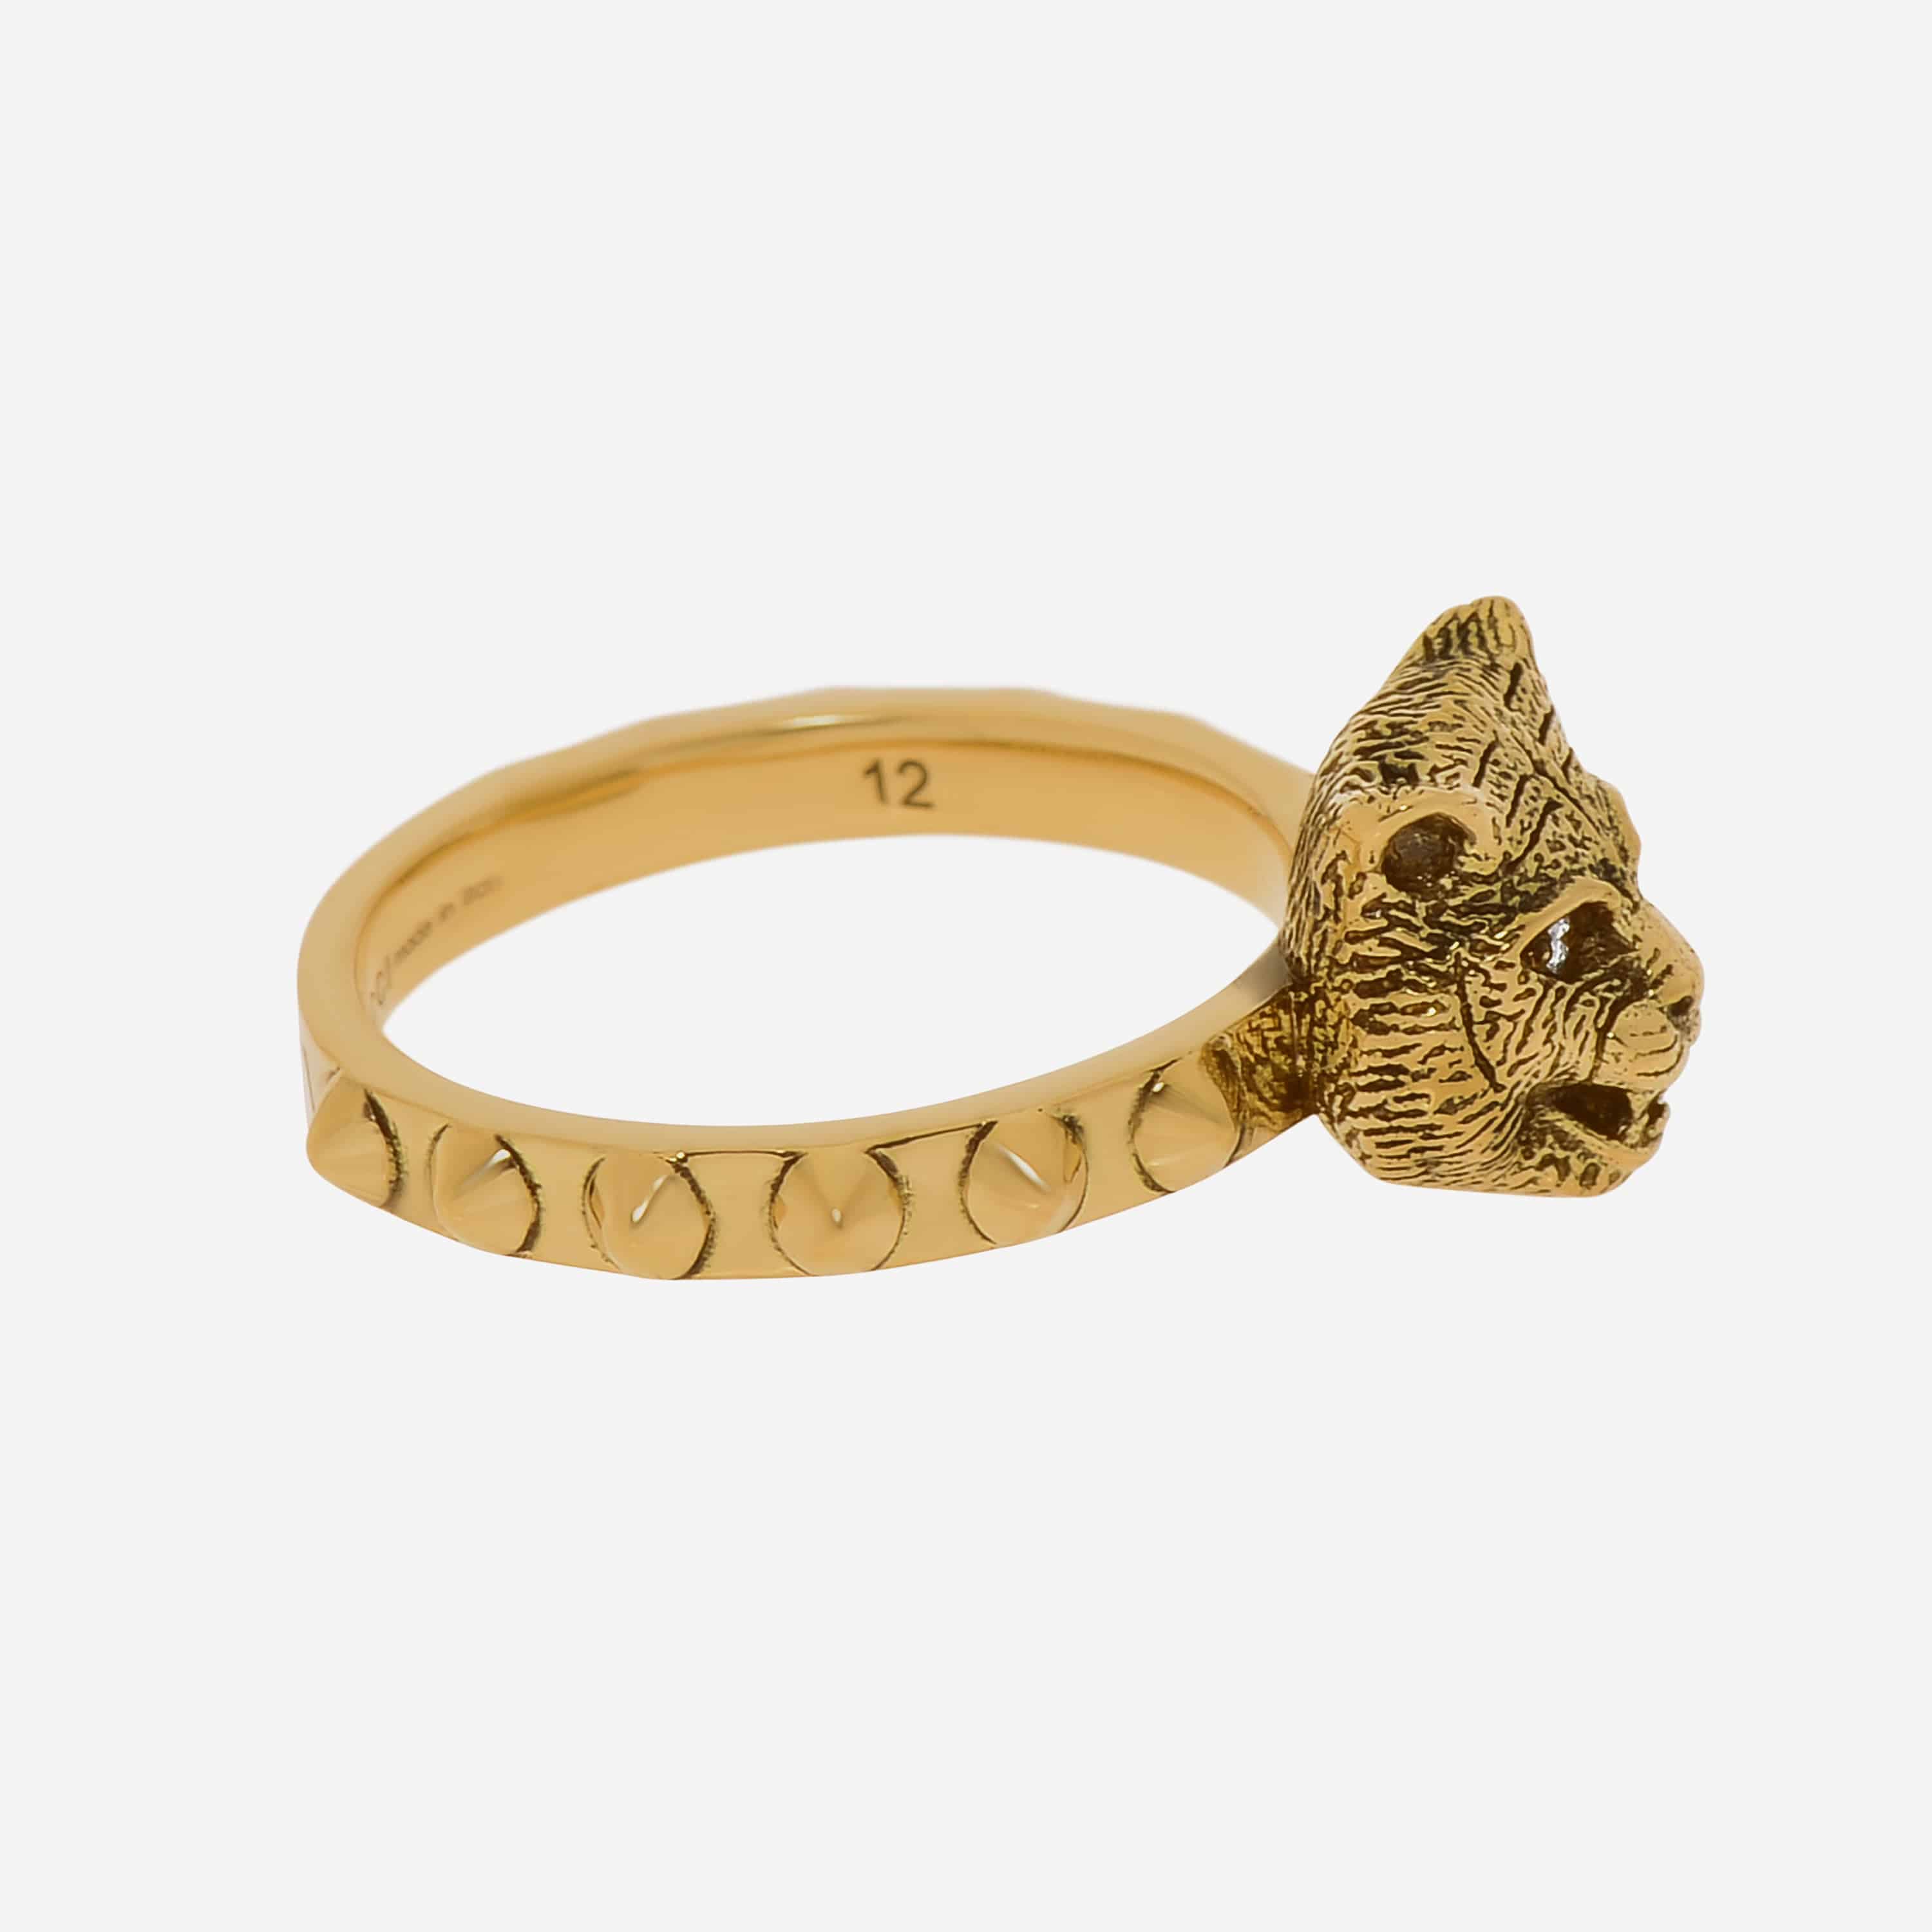 Gucci Le Marche Des Merveilles 18K Yellow Gold, Diamond Statement Ring - THE SOLIST